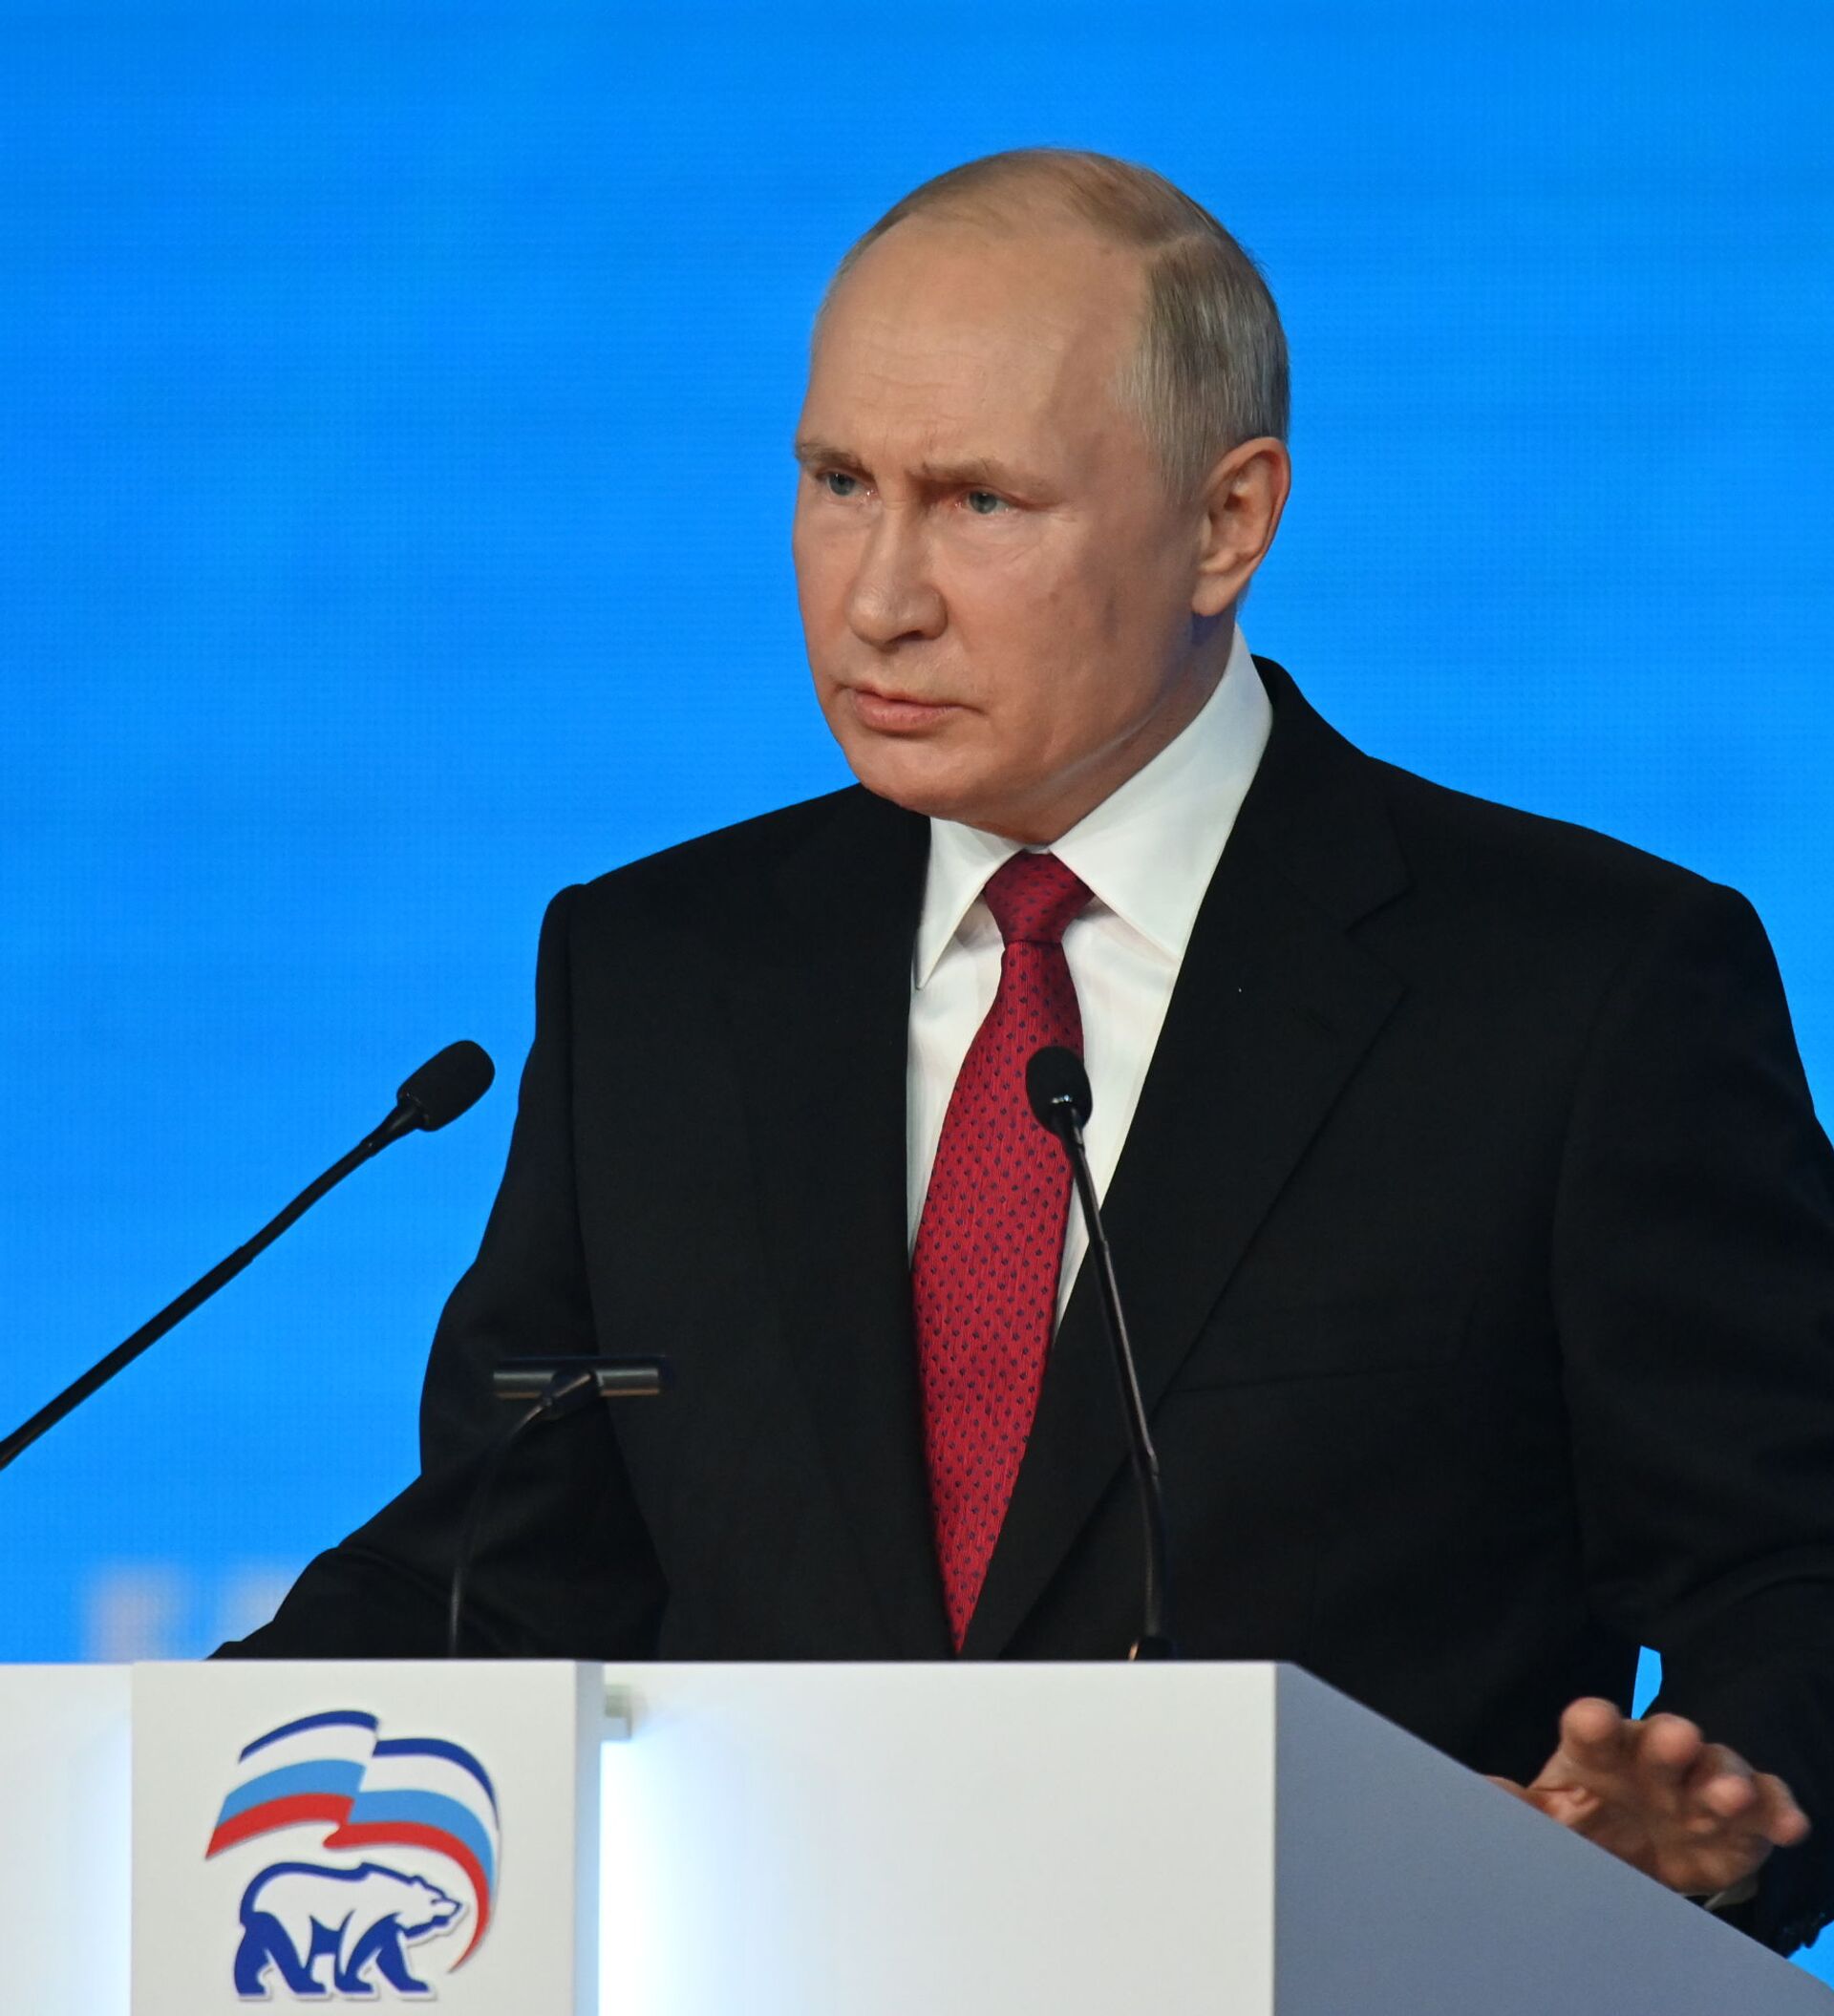 弗拉基米尔 • 普京在“瓦尔代”国际辩论俱乐部会议上的发言 重要声明 - 2016年10月27日, 俄罗斯卫星通讯社